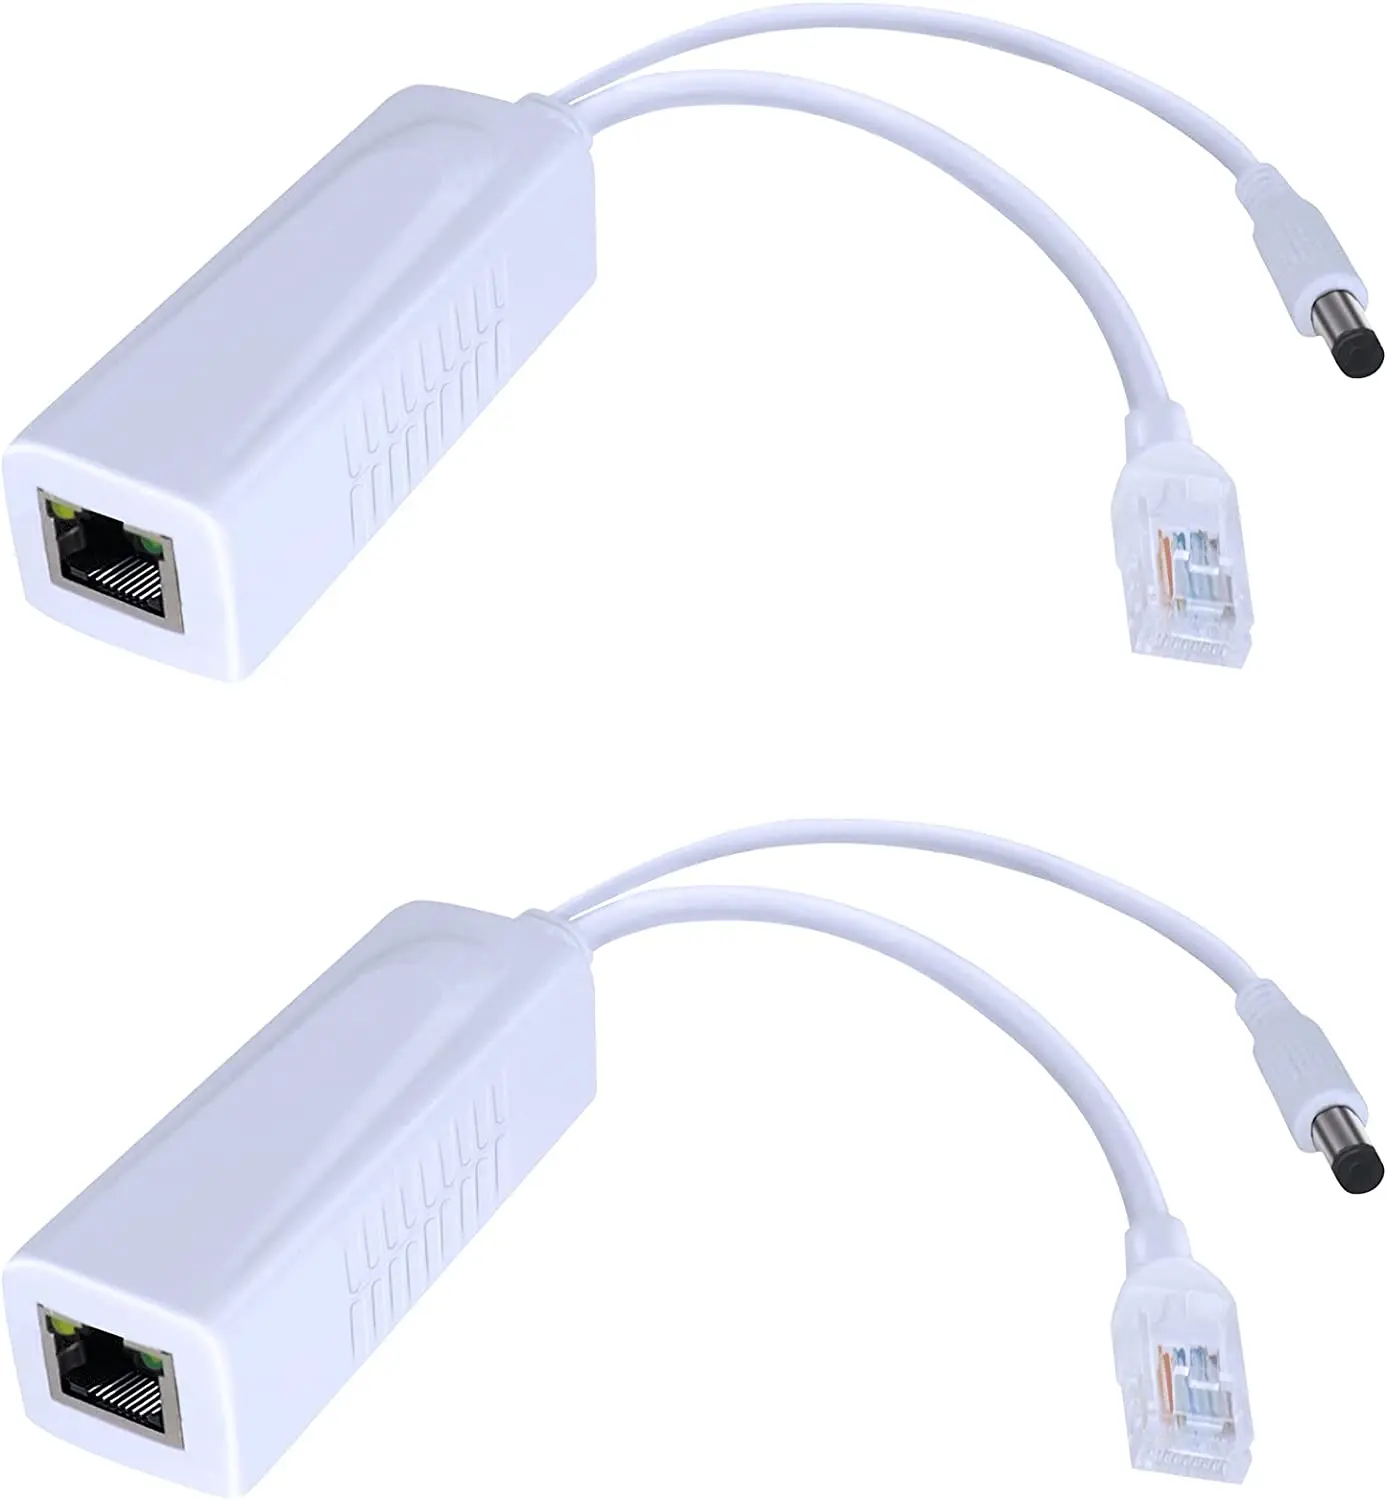 

Gigabit PoE Splitter Adapter,12V 2A Output,1000Mbps, IEEE 802.3AF/at, Suitable for IP Cameras, AP WiFi, IP Phones